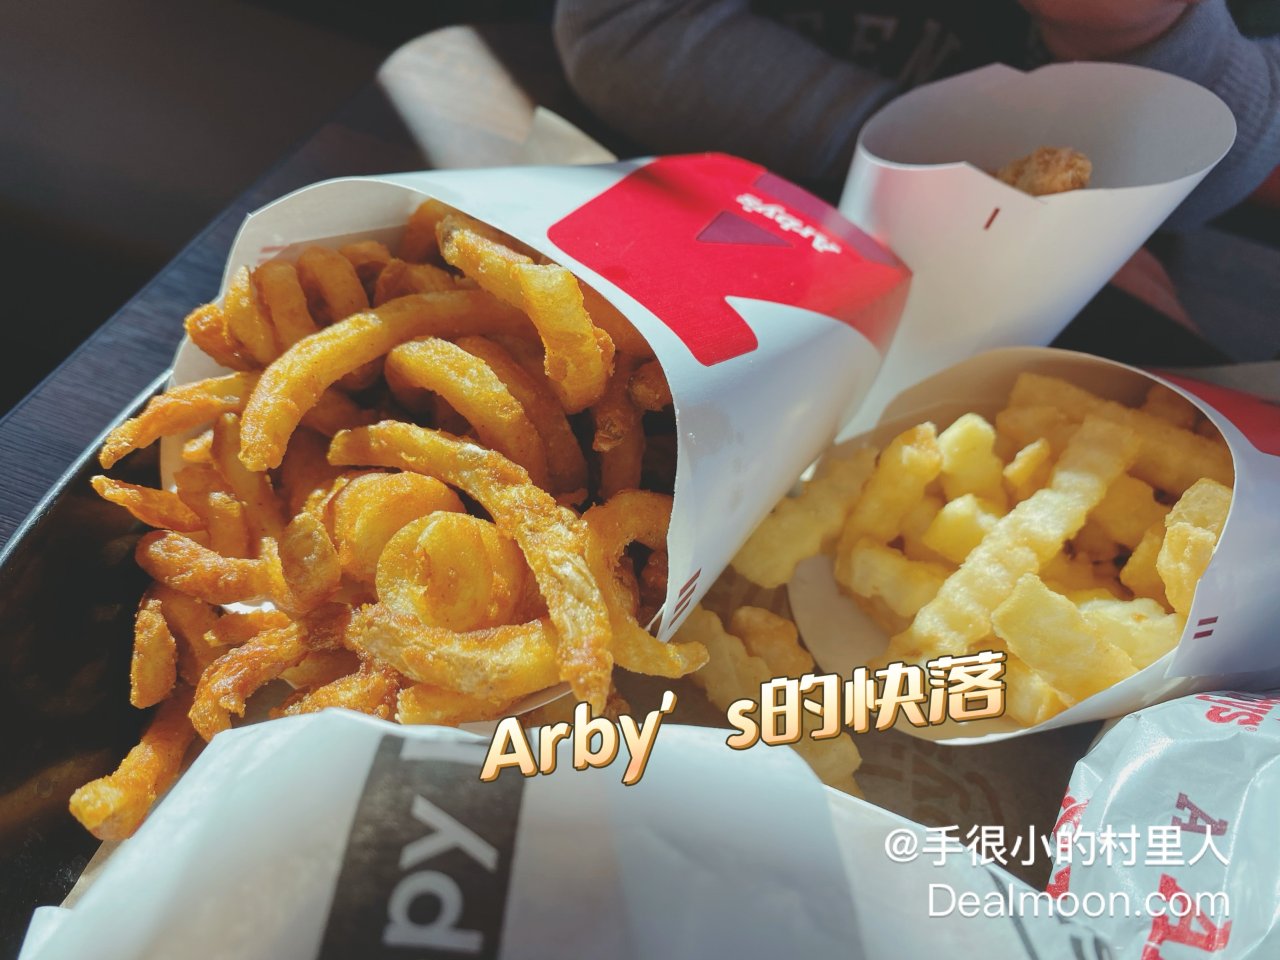 美式快餐Arby‘s的几款限定产品...